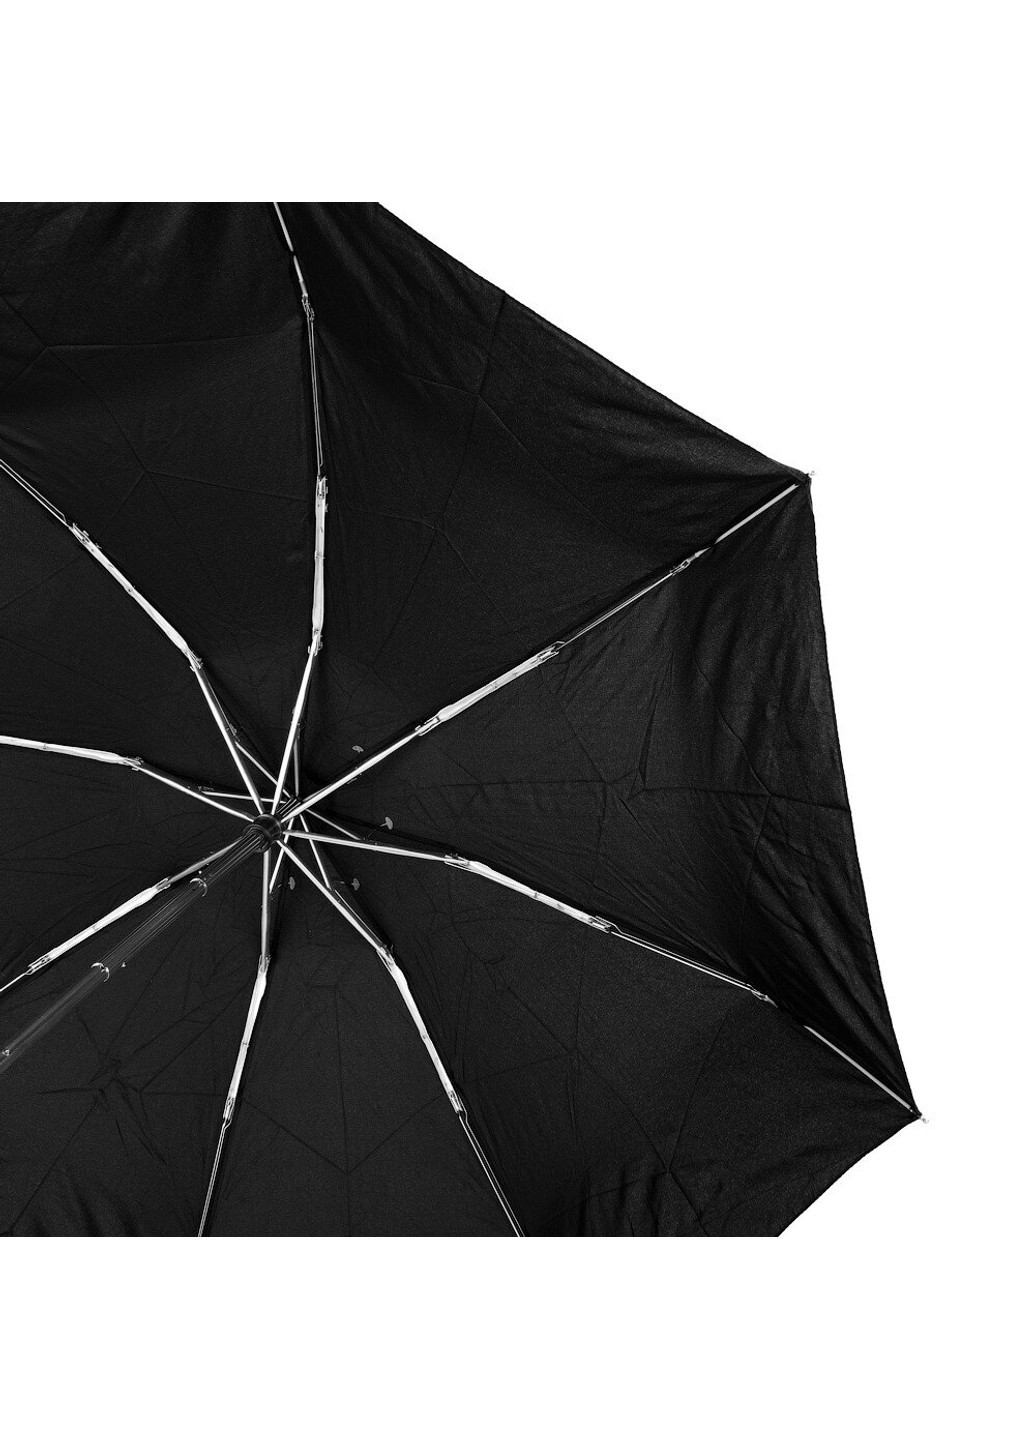 Мужской компактный облегченный механический зонт MAGIC RAIN ZMR52001 Doppler (262975677)